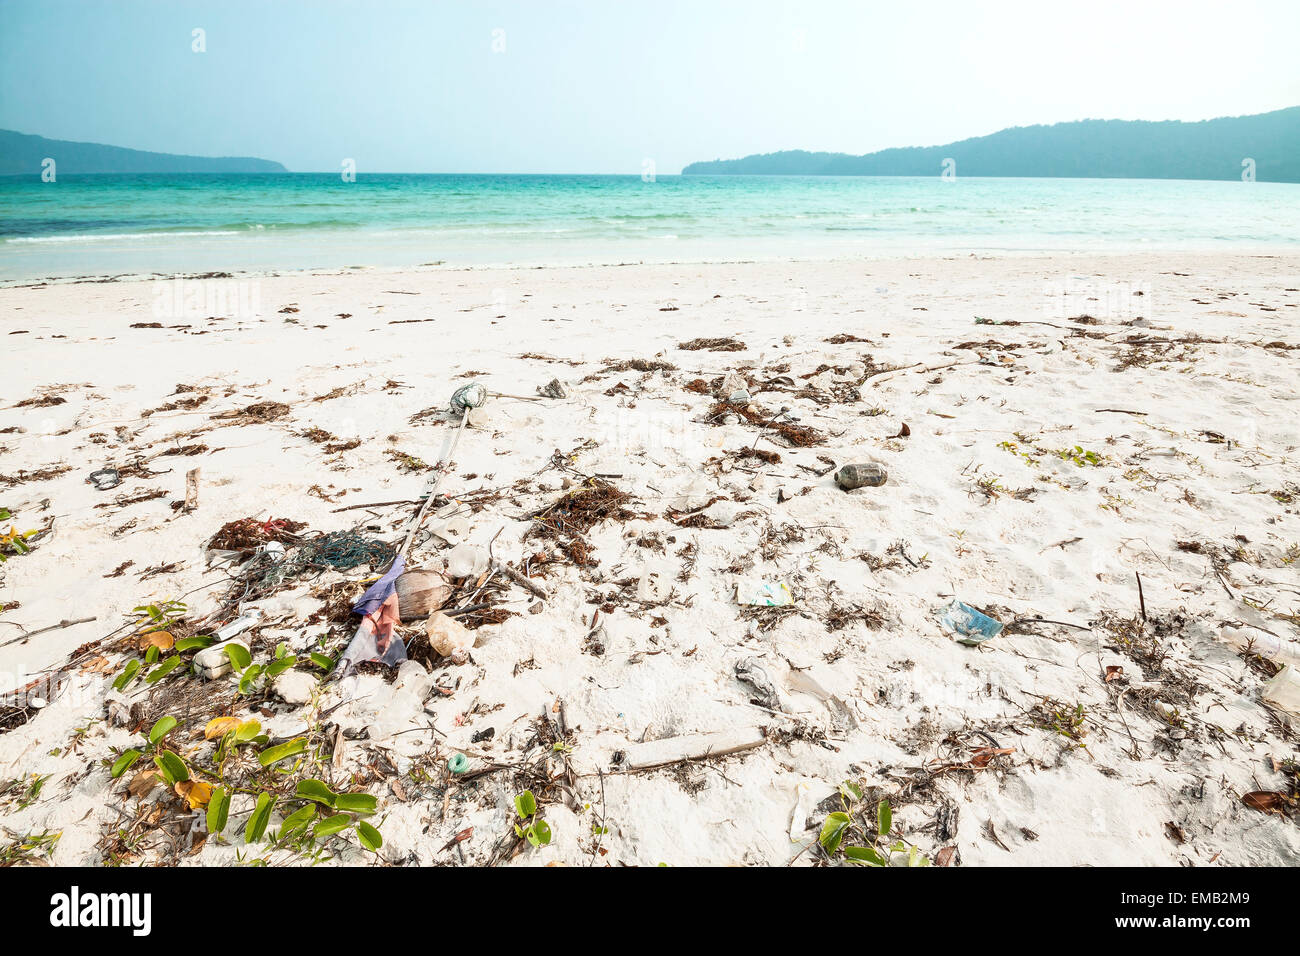 Spazzatura lavato fino sulla spiaggia di sabbia bianca in Cambogia, in Asia. Foto Stock